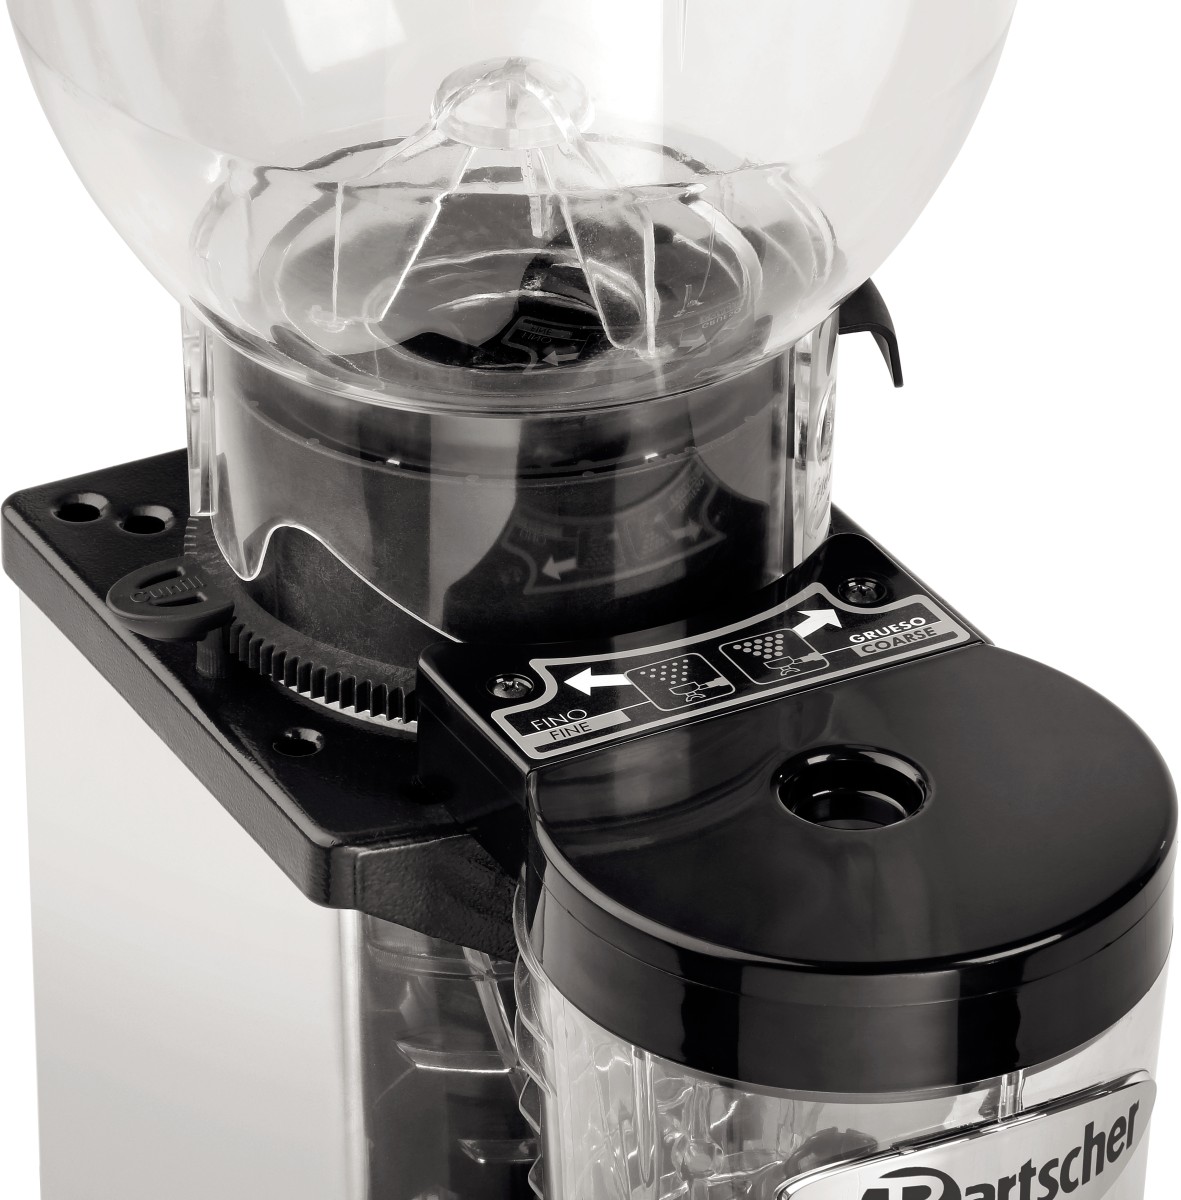  Bartscher Coffee grinder model Space II 